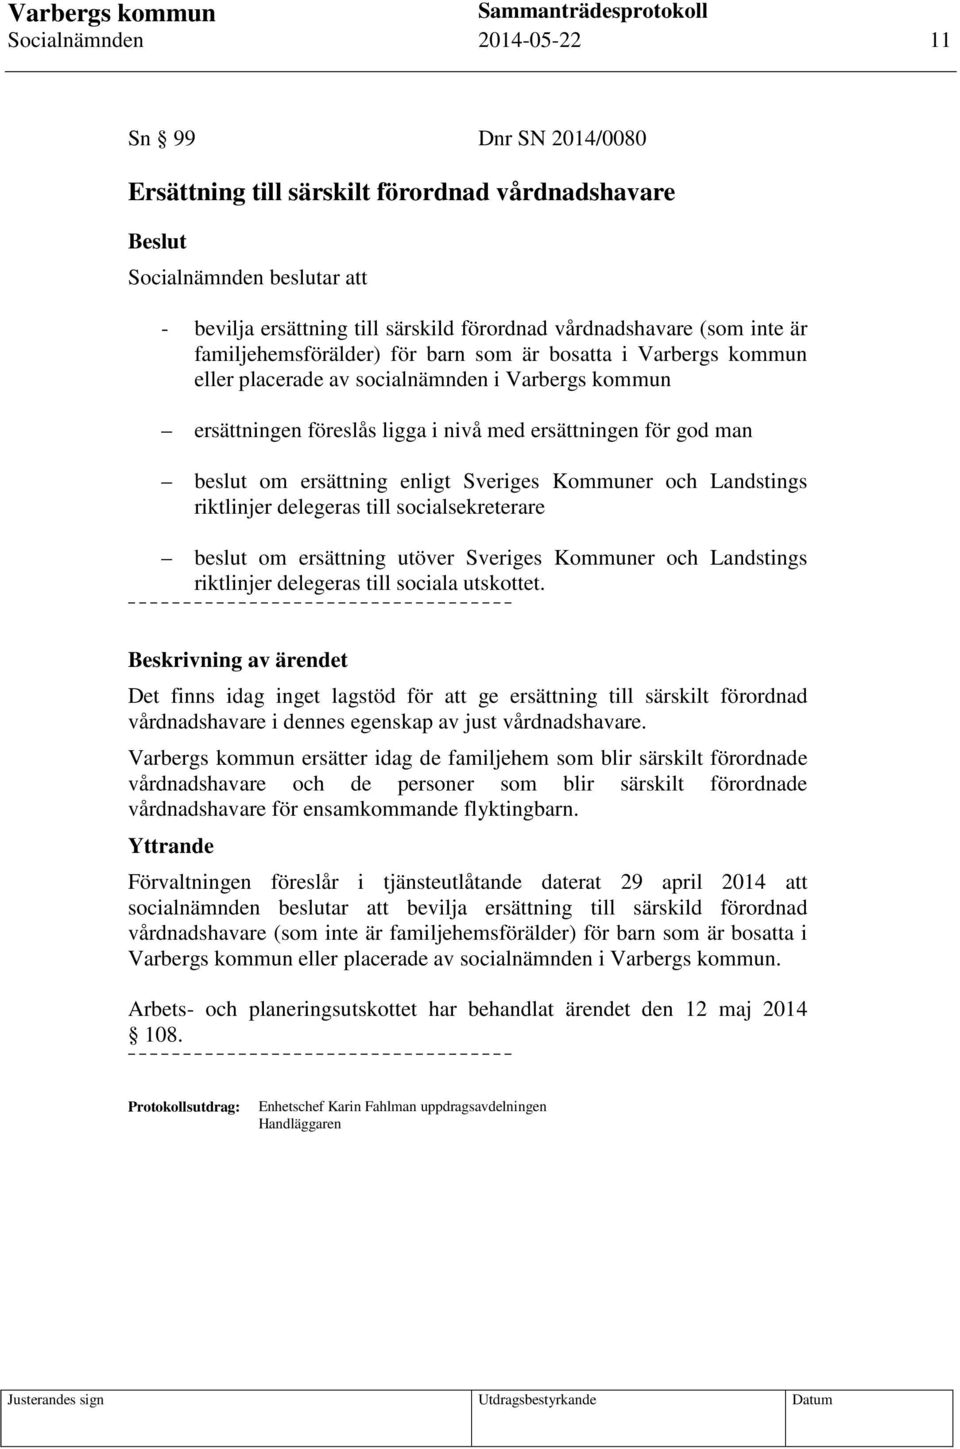 ersättning enligt Sveriges Kommuner och Landstings riktlinjer delegeras till socialsekreterare beslut om ersättning utöver Sveriges Kommuner och Landstings riktlinjer delegeras till sociala utskottet.